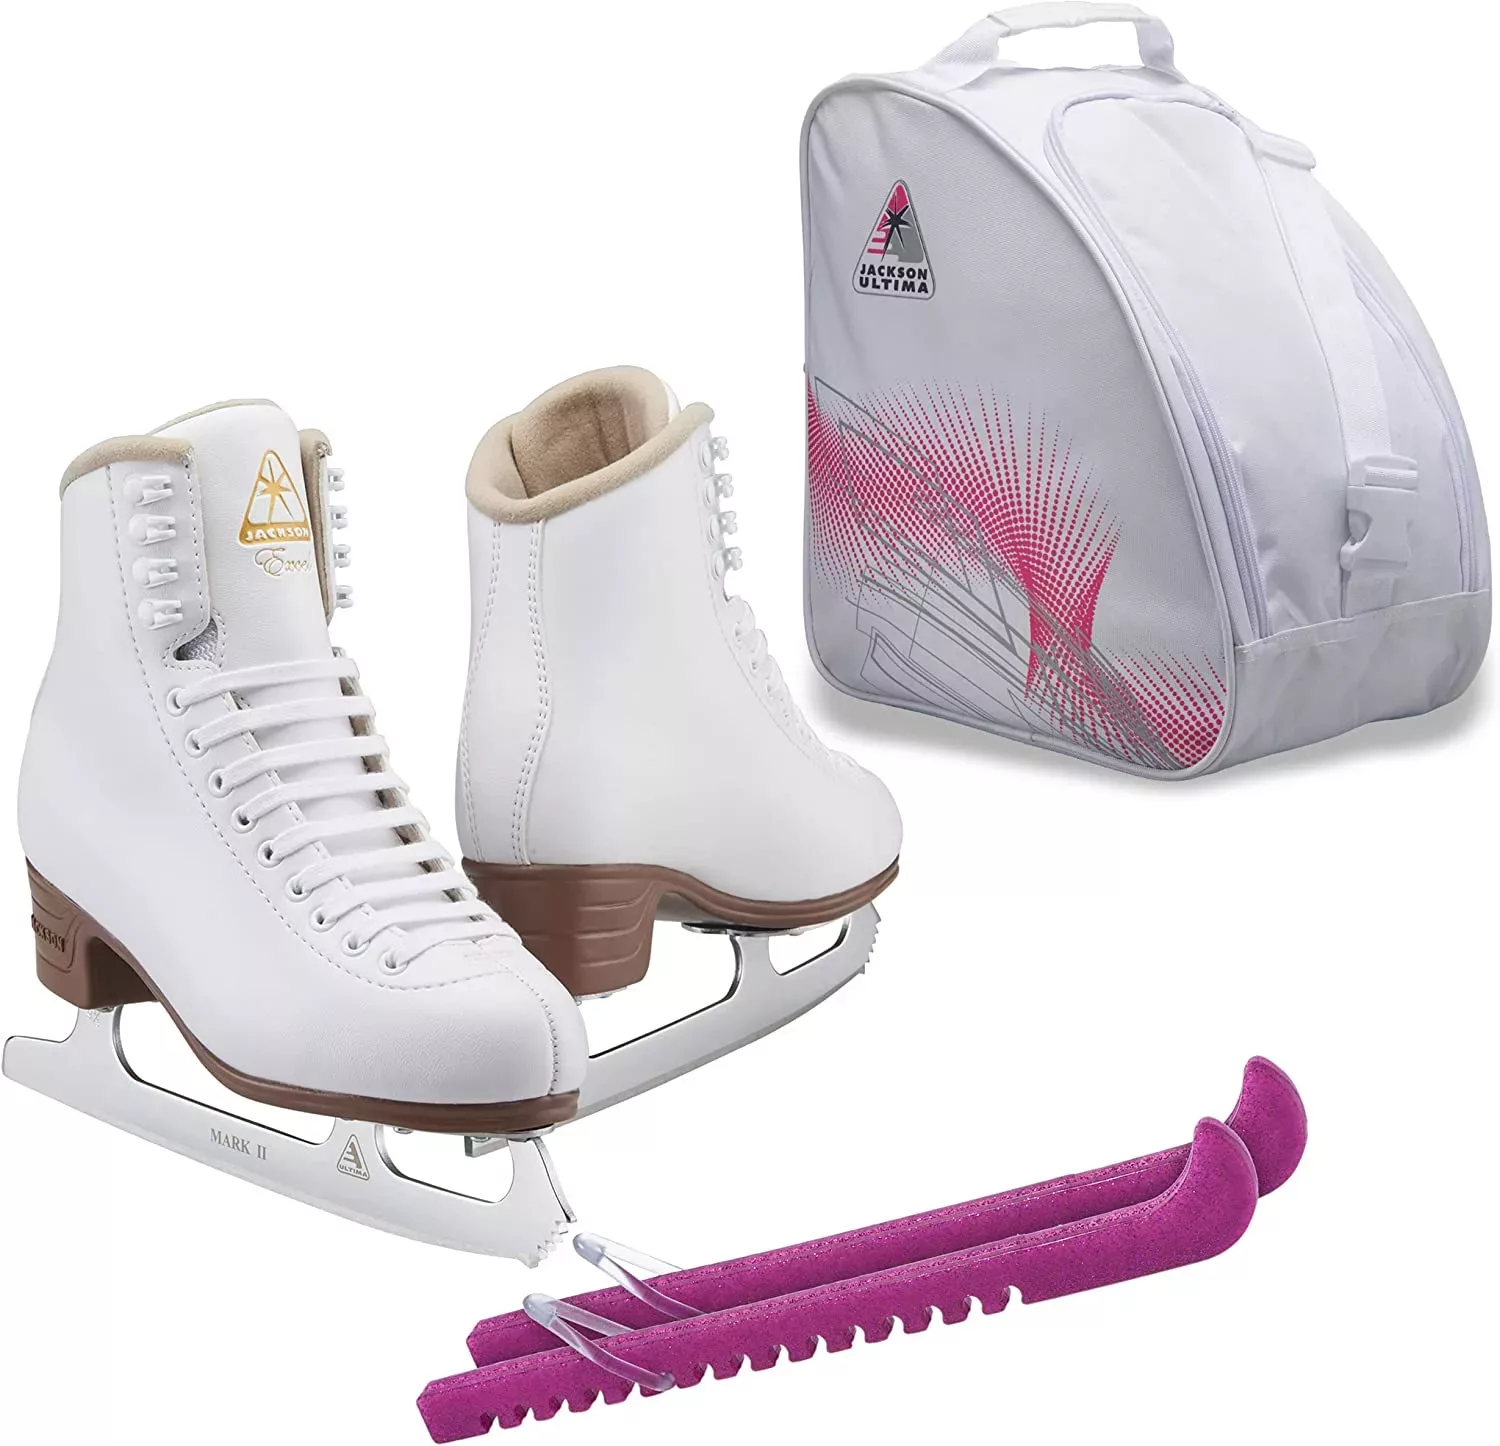 SKATE GURU Jackson Ultima Figure Ice Skates EXCEL JS1290 Bundle with Bag and Guardog Skate Guards Bundles